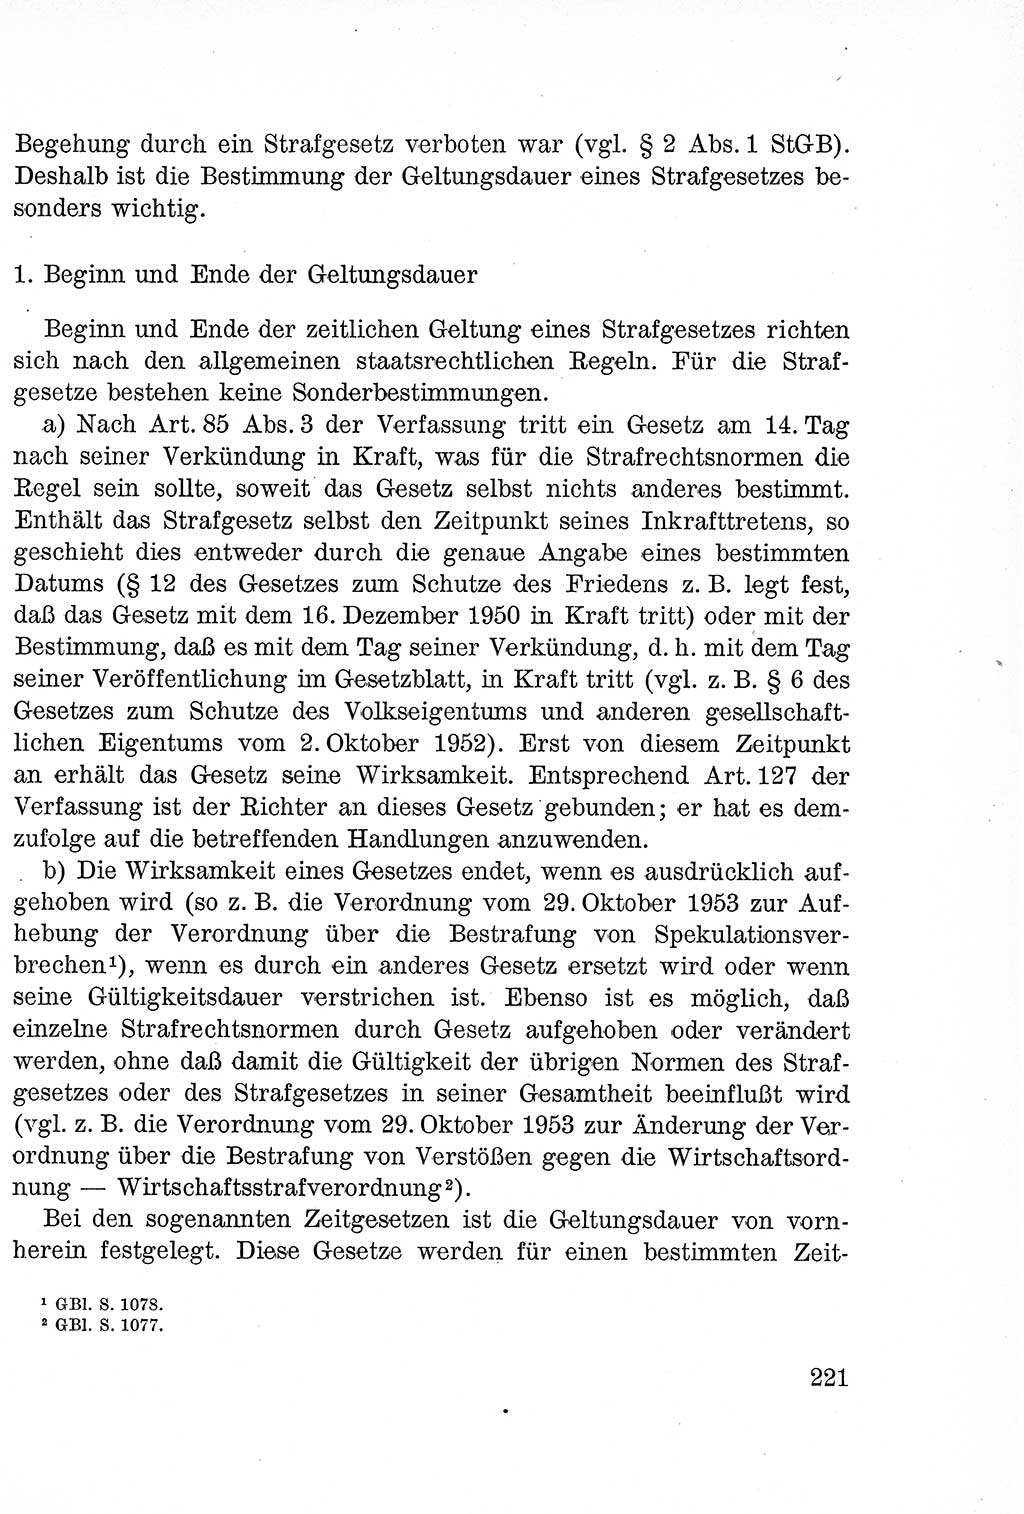 Lehrbuch des Strafrechts der Deutschen Demokratischen Republik (DDR), Allgemeiner Teil 1957, Seite 221 (Lb. Strafr. DDR AT 1957, S. 221)